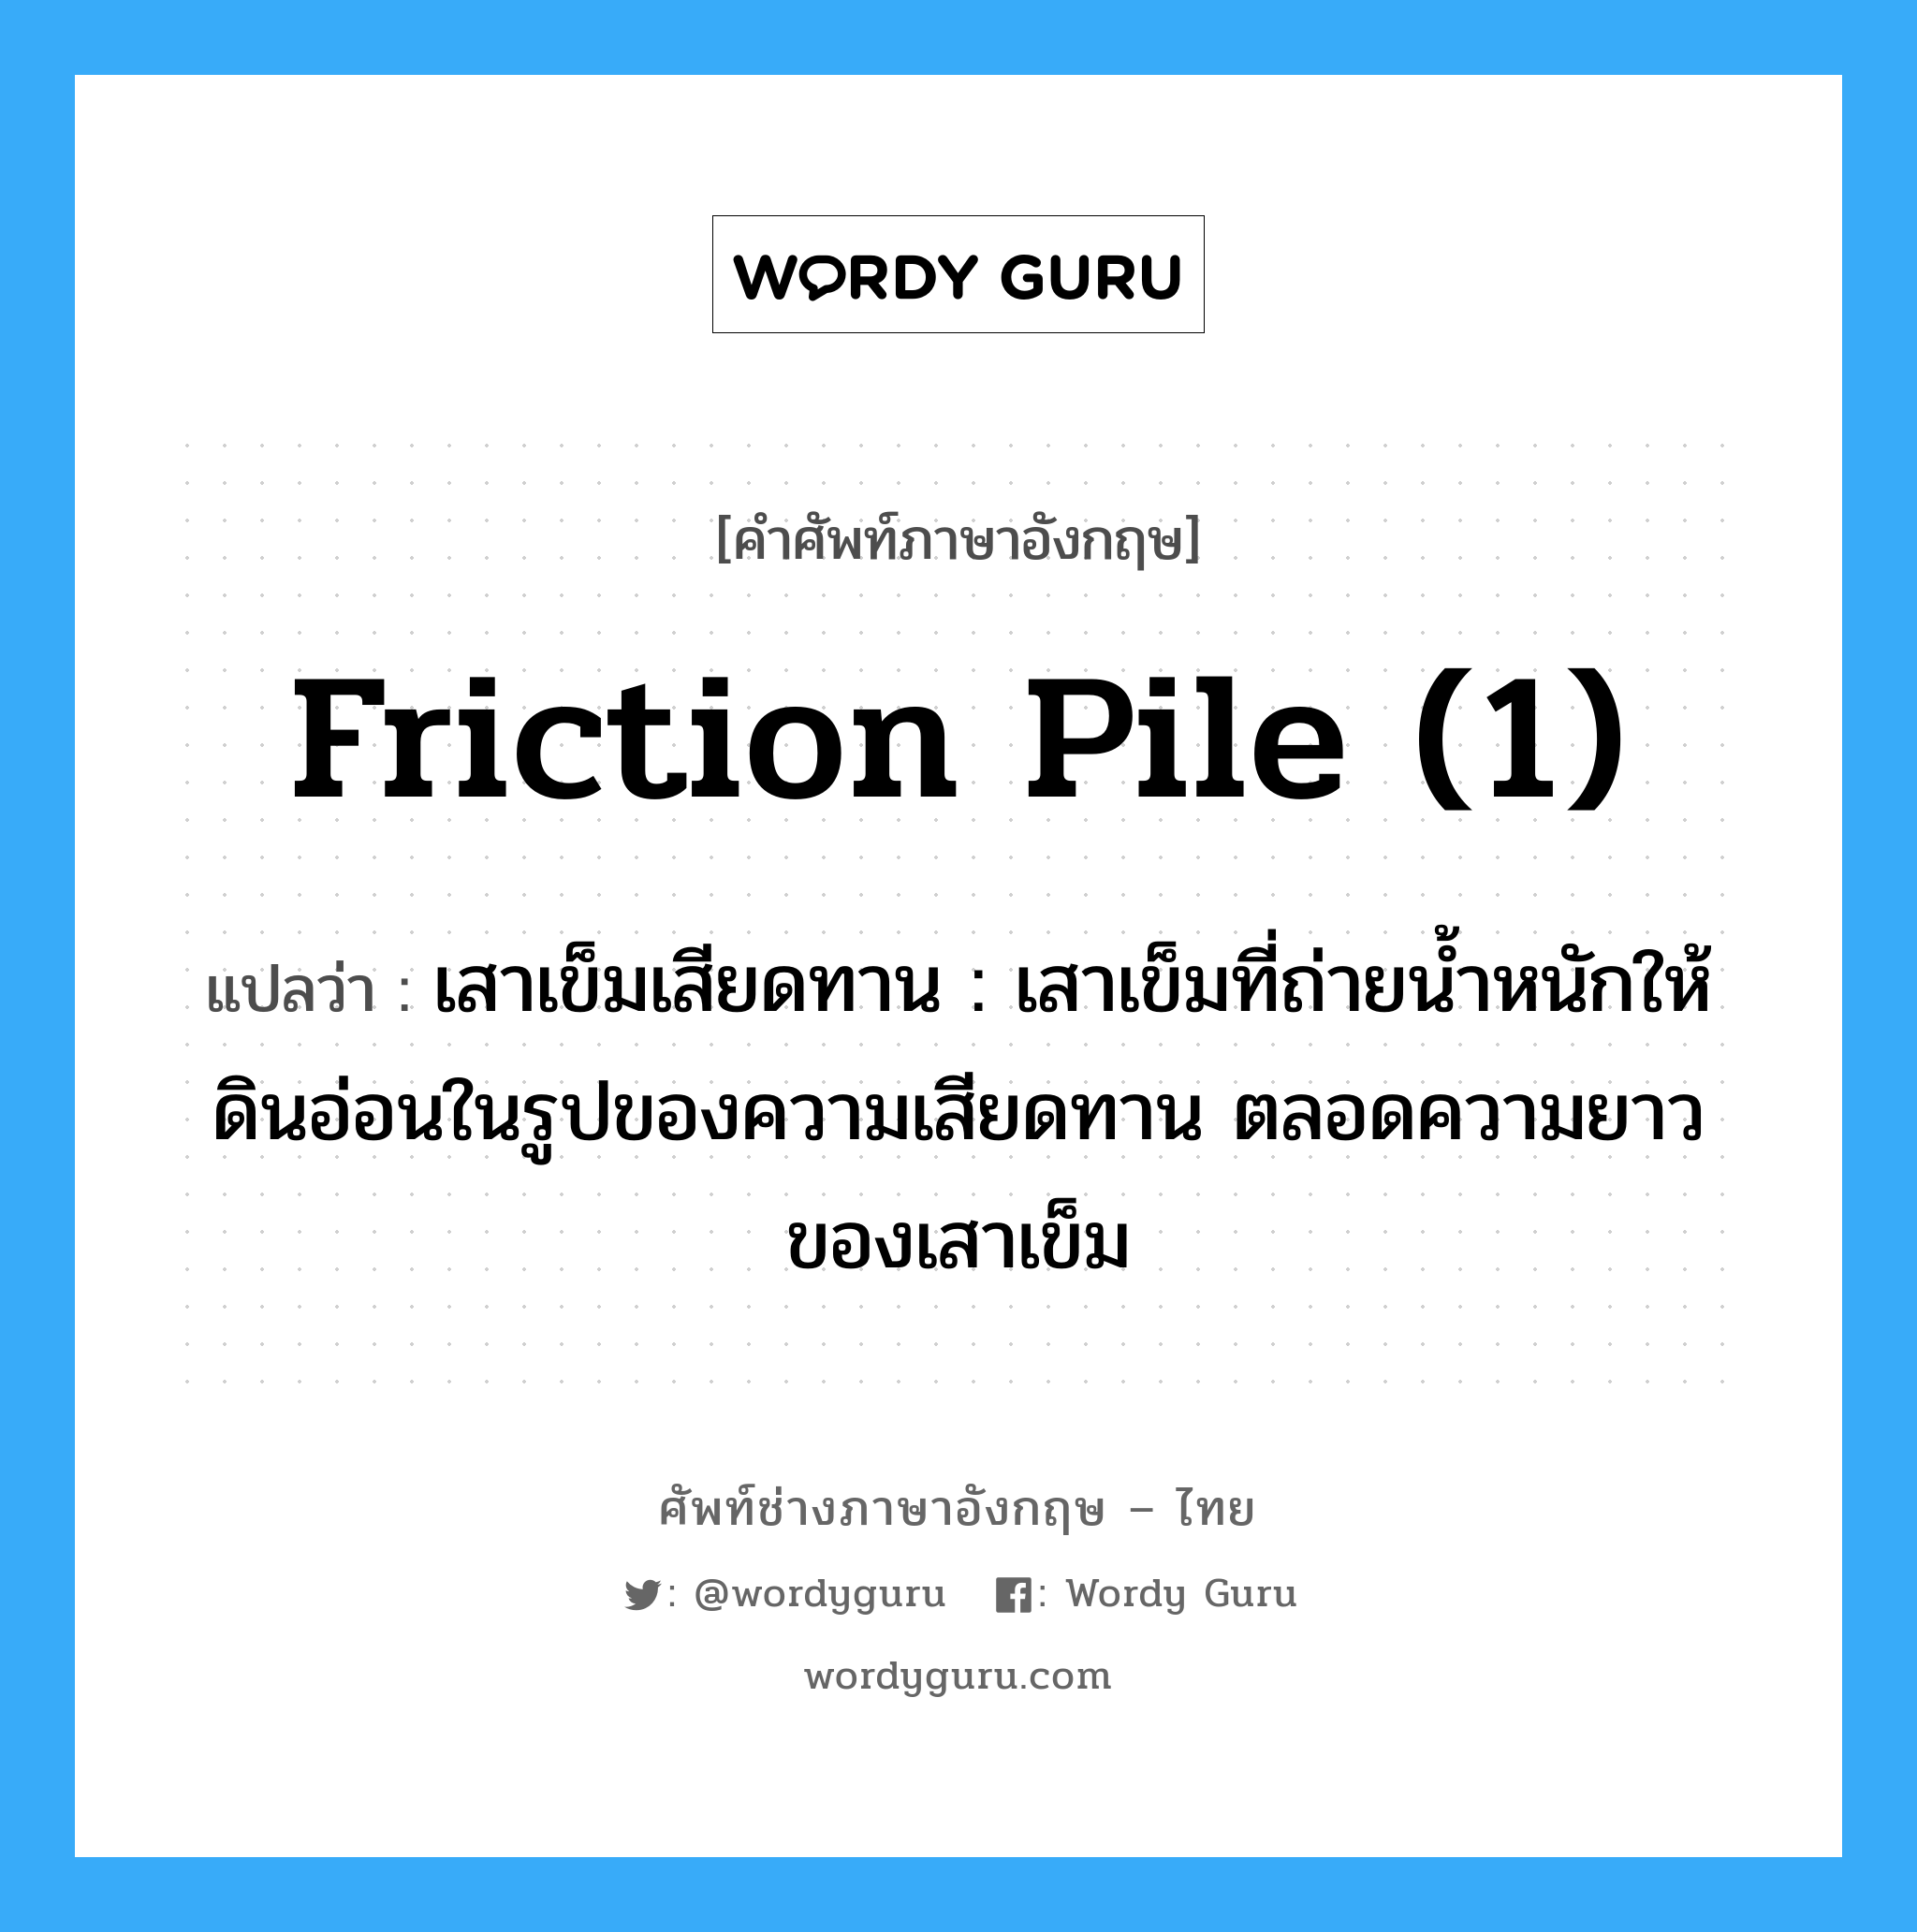 friction pile (1) แปลว่า?, คำศัพท์ช่างภาษาอังกฤษ - ไทย friction pile (1) คำศัพท์ภาษาอังกฤษ friction pile (1) แปลว่า เสาเข็มเสียดทาน : เสาเข็มที่ถ่ายน้ำหนักให้ดินอ่อนในรูปของความเสียดทาน ตลอดความยาวของเสาเข็ม